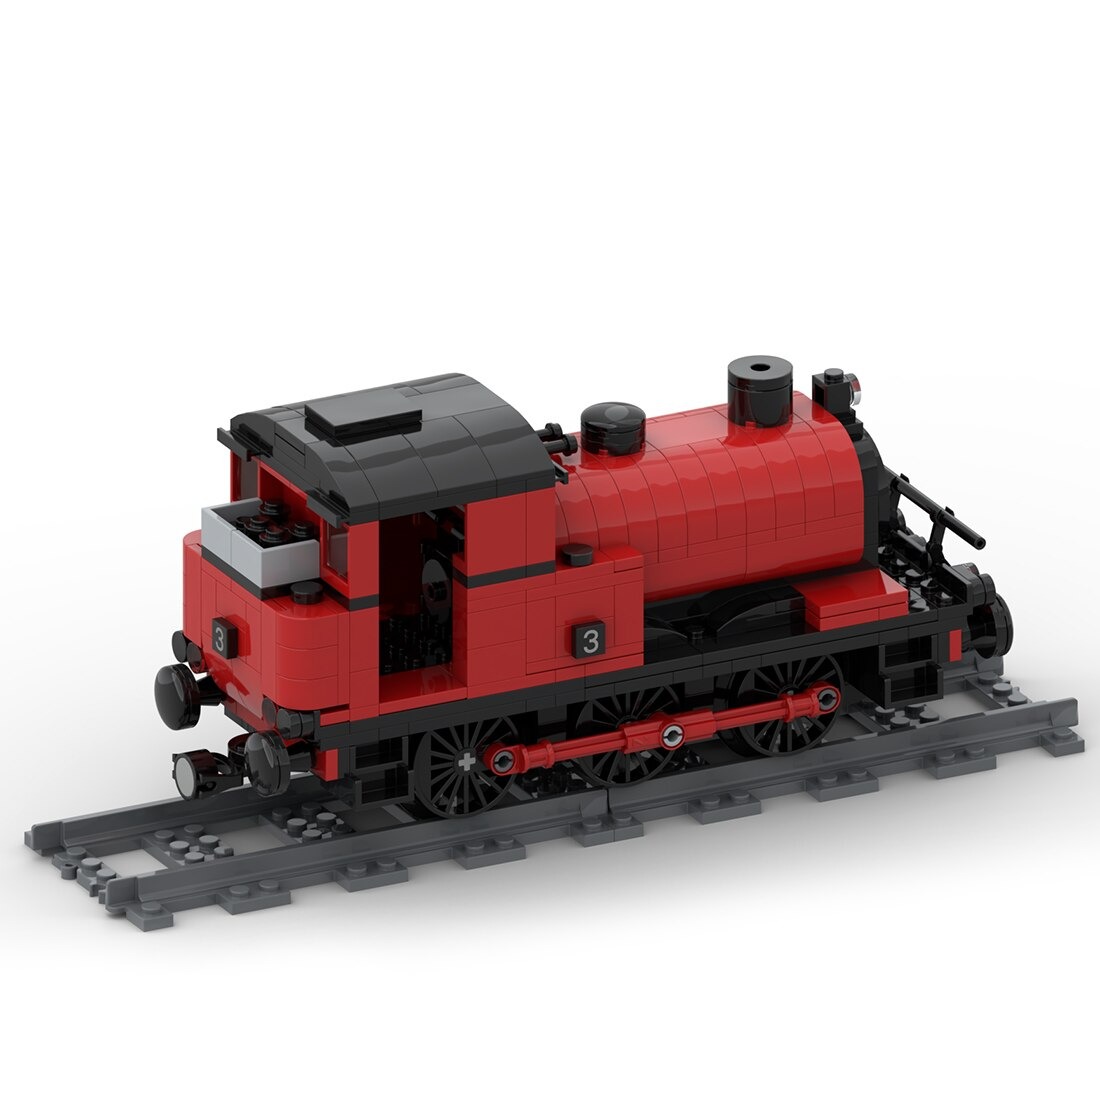 Saddle Tank Engine Train Moc 42439 3